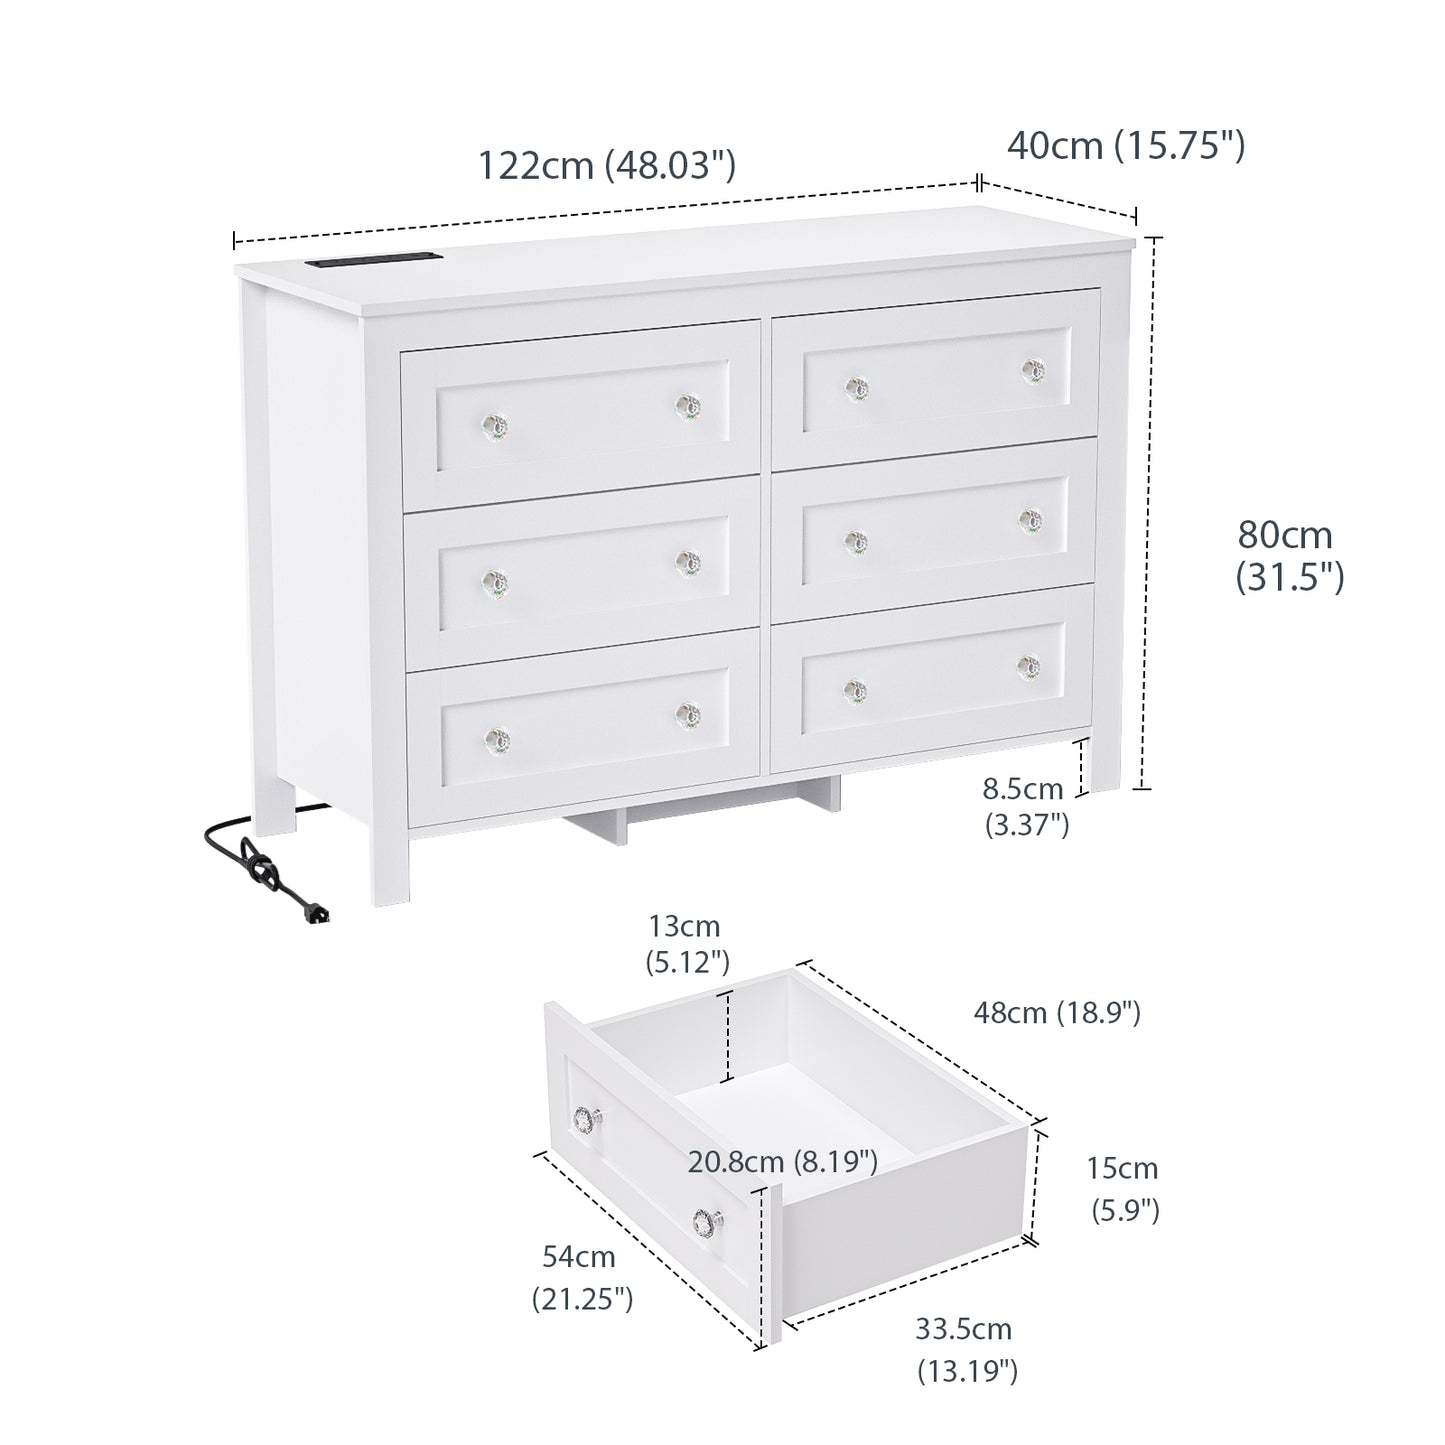 HAIOOU 6 Drawer Dresser for Bedroom